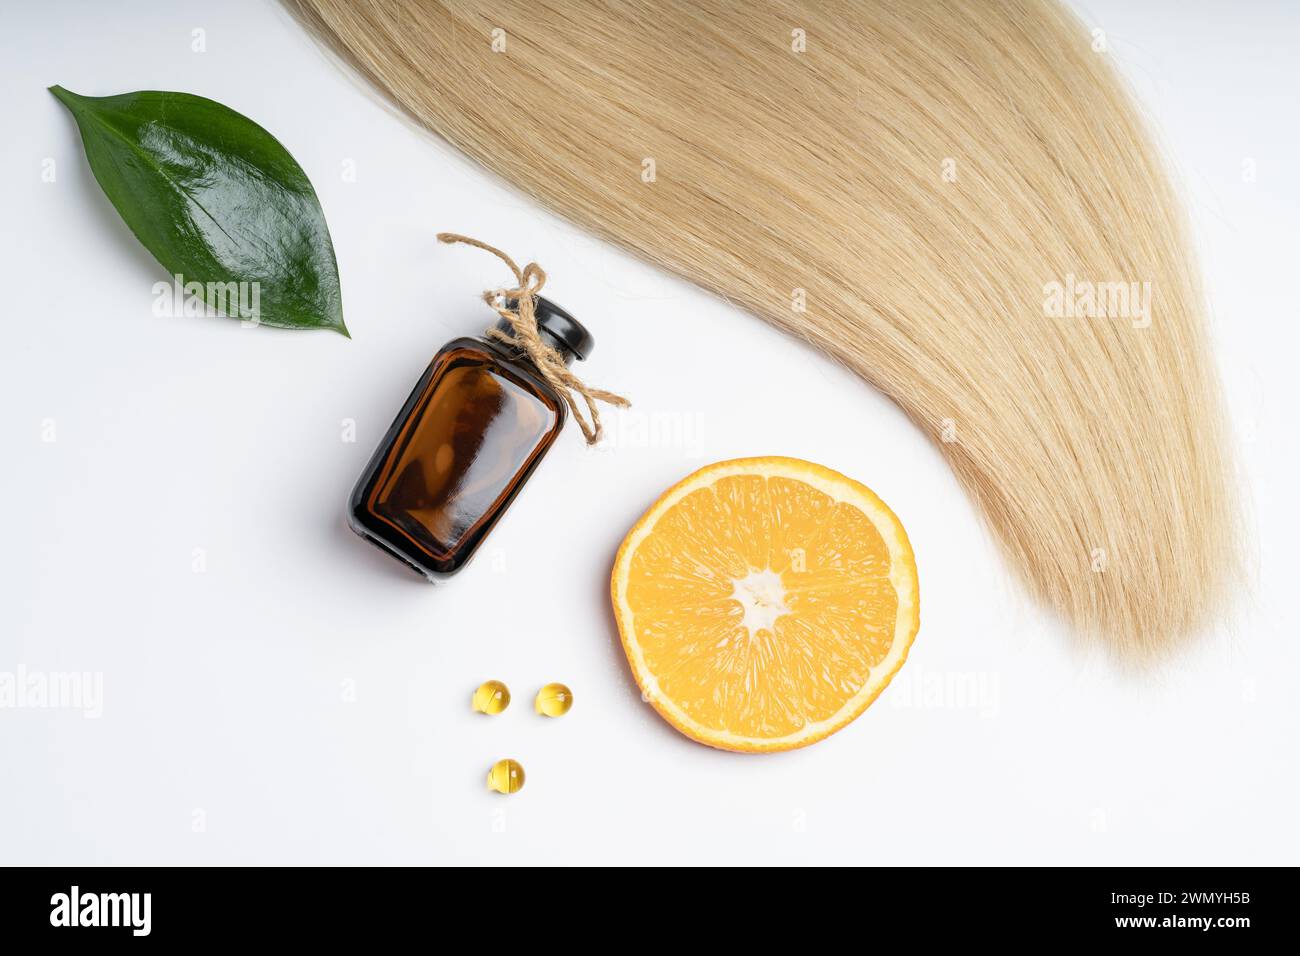 Una ciocca di capelli biondi insieme a prodotti naturali per la cura dei capelli, tra cui una bottiglia di vetro marrone, fetta di arancia, foglia verde e capsule vitaminiche. Foto Stock